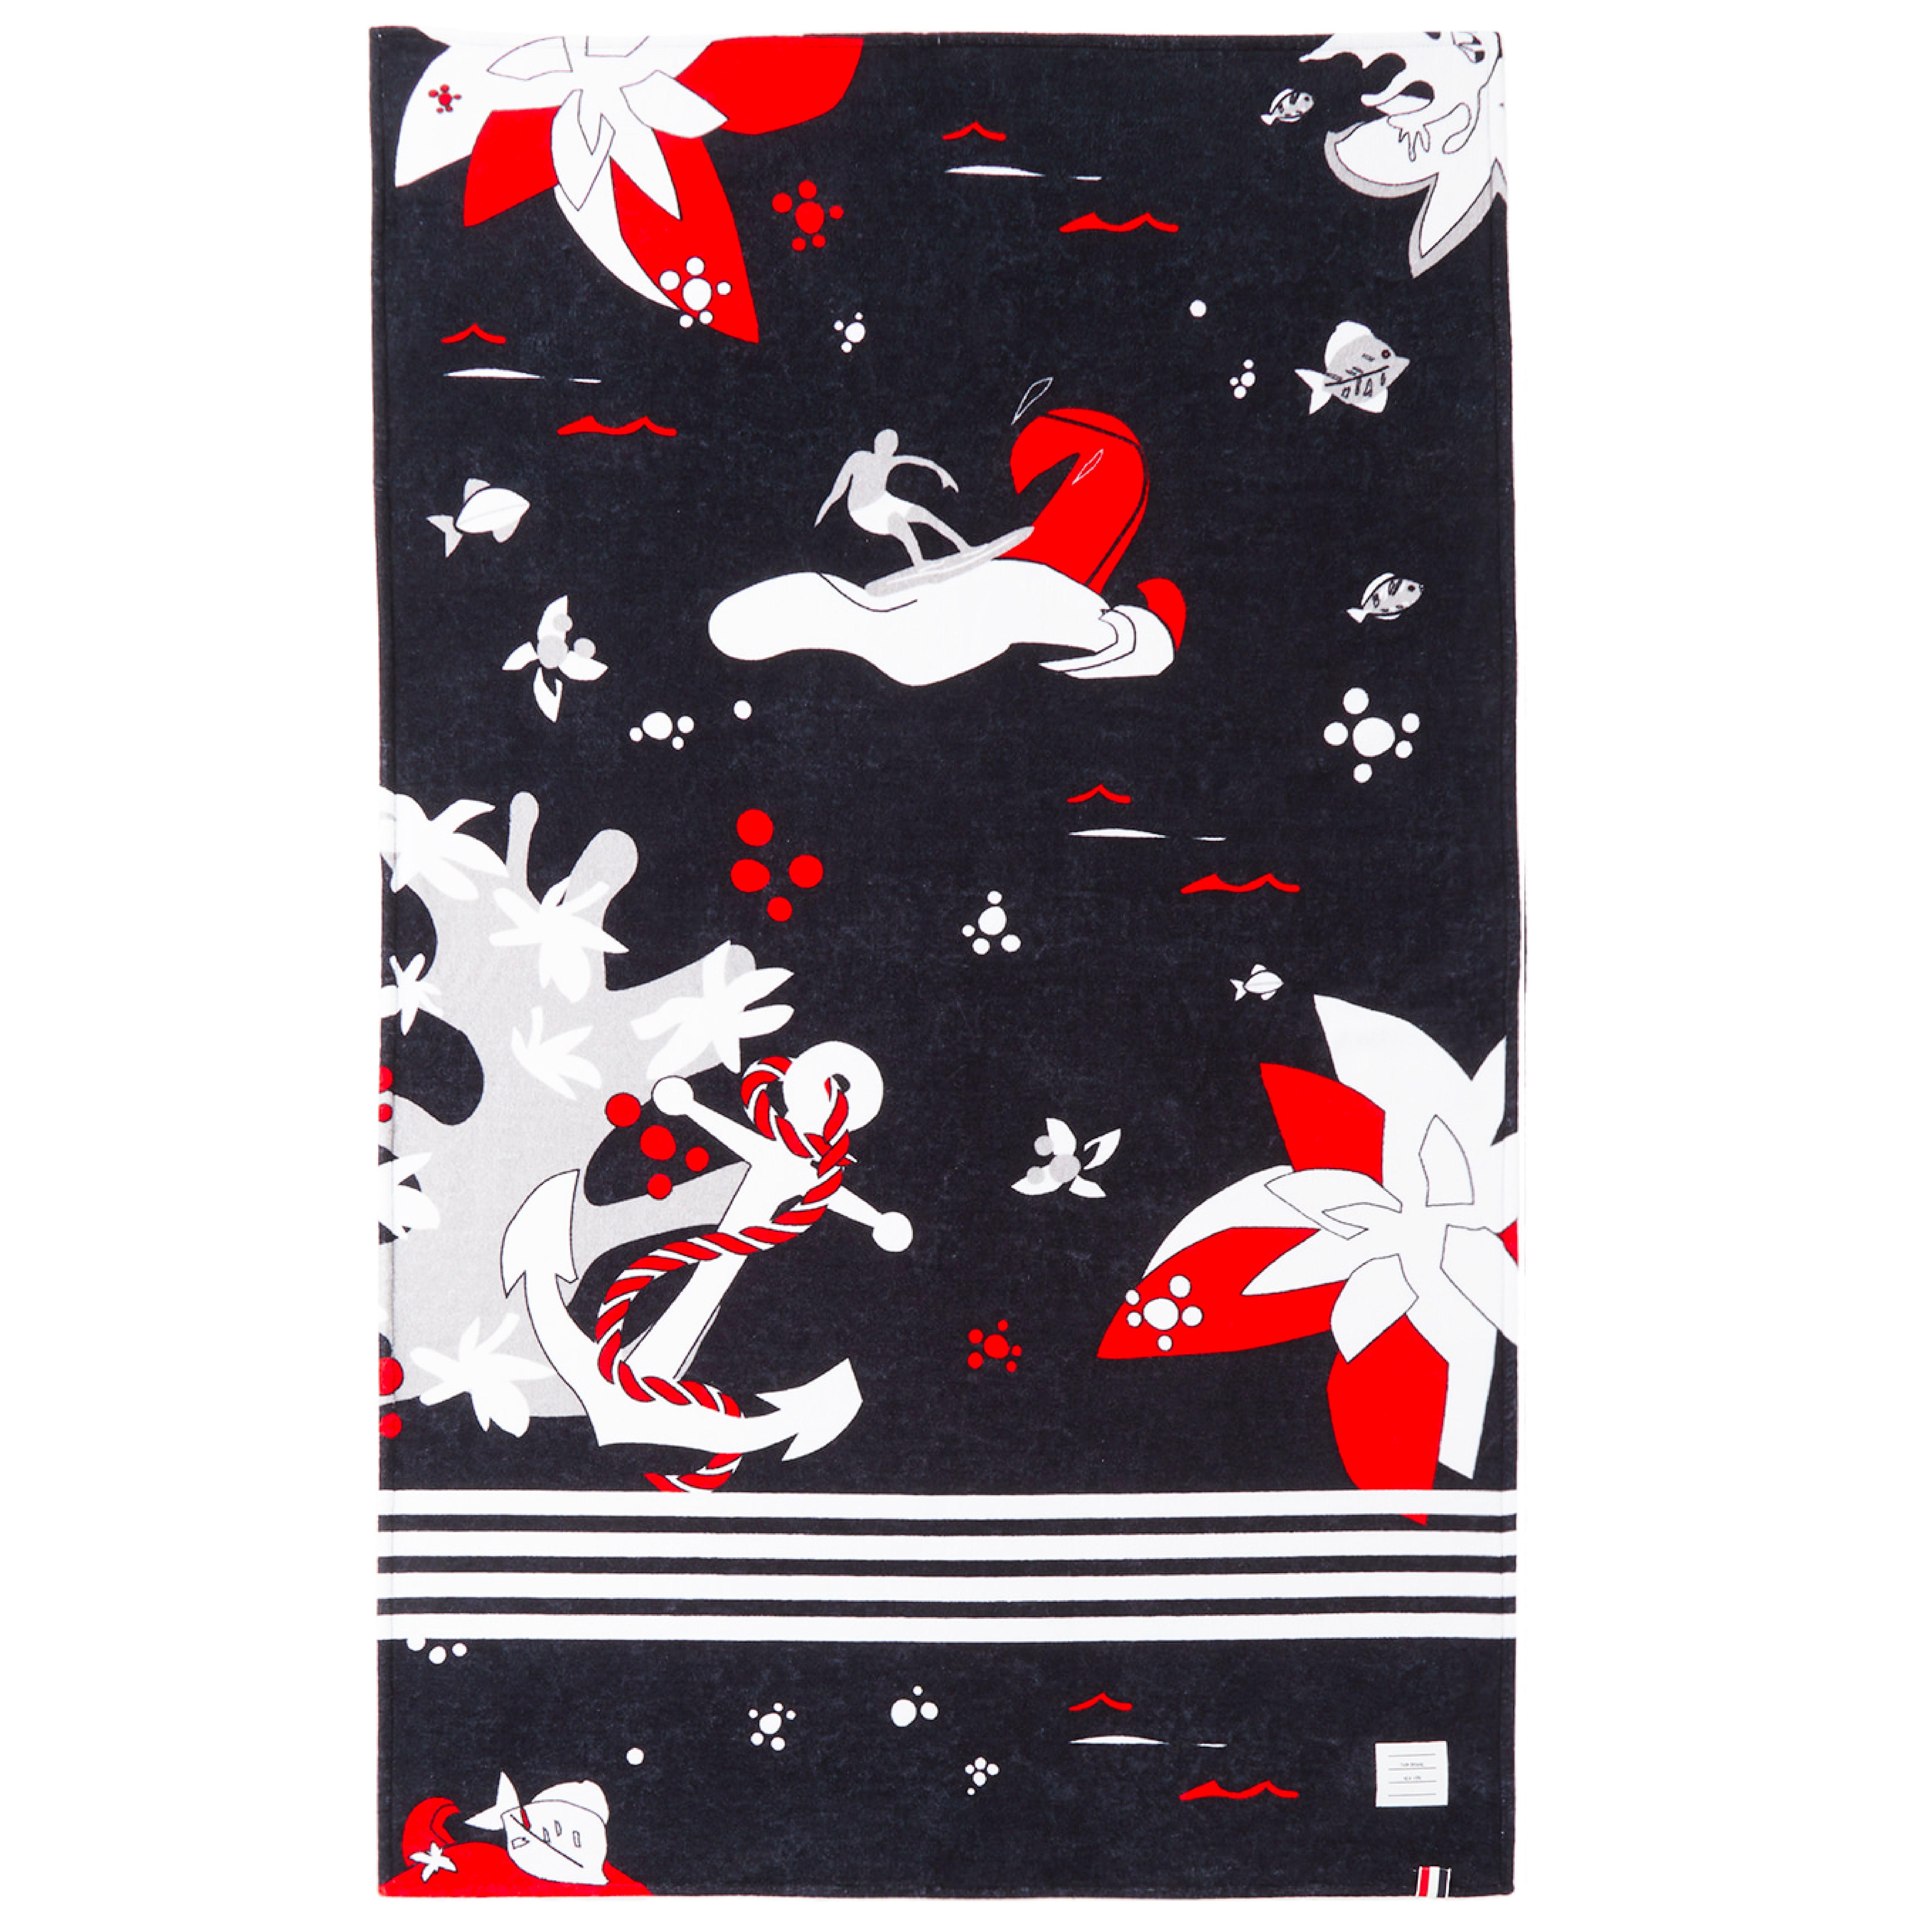 Serviette de plage à motif hawaïen Thom Browne, marine et rouge. Serviette rectangulaire en coton éponge de couleur marine avec un motif graphique rouge, blanc et gris. Signature de bandes blanches en longueur. Logo en textile blanc et drapeau